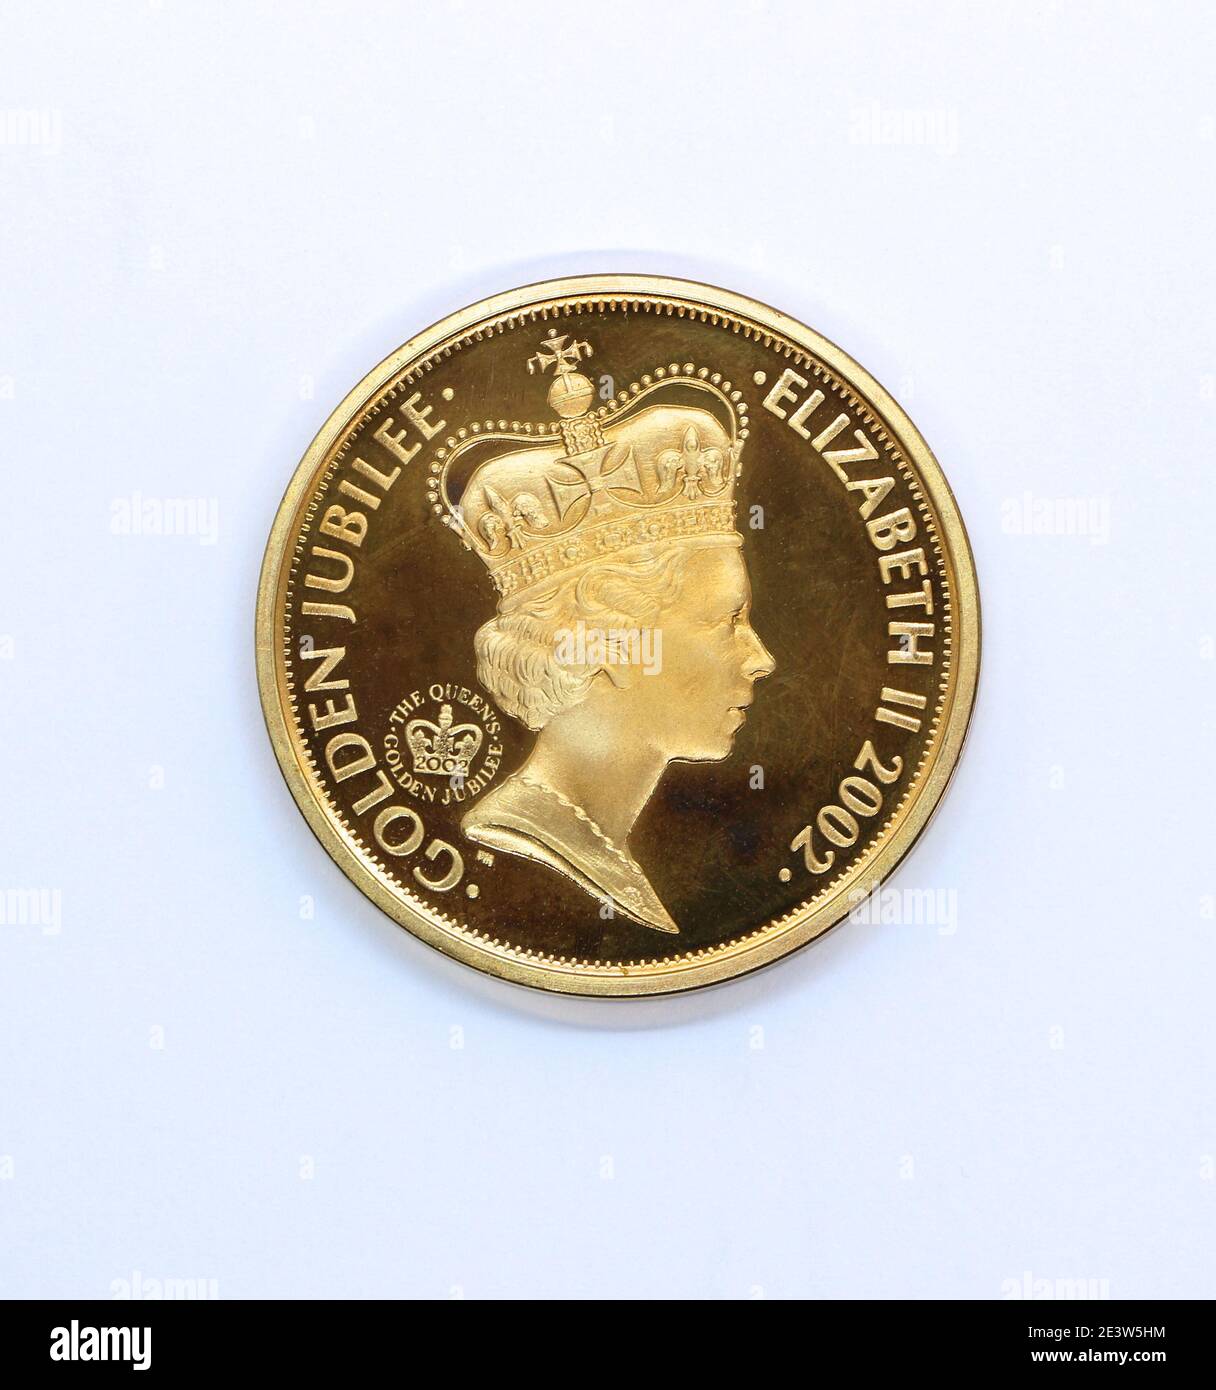 Foto del lato opposto di una moneta del £5 emessa per il Giubileo d'Oro di sua Maestà la Regina Elisabetta II nel 2002 Foto Stock